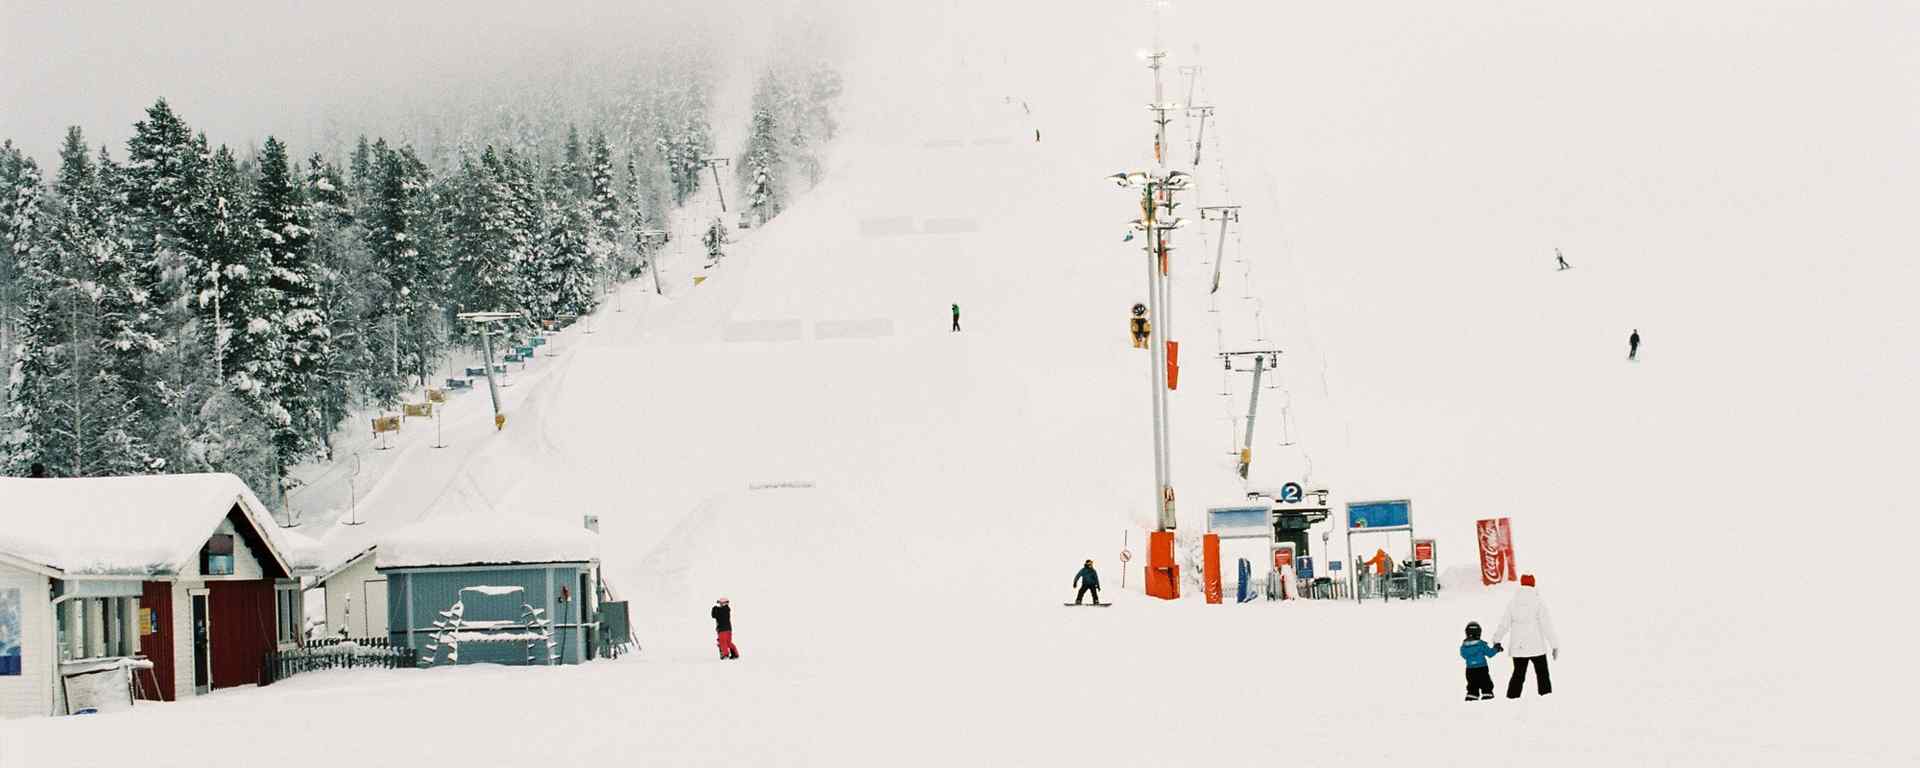 滑雪场_白雪皑皑静谧唯美的滑雪场_小清新滑雪场图片_帅气滑雪图片壁纸